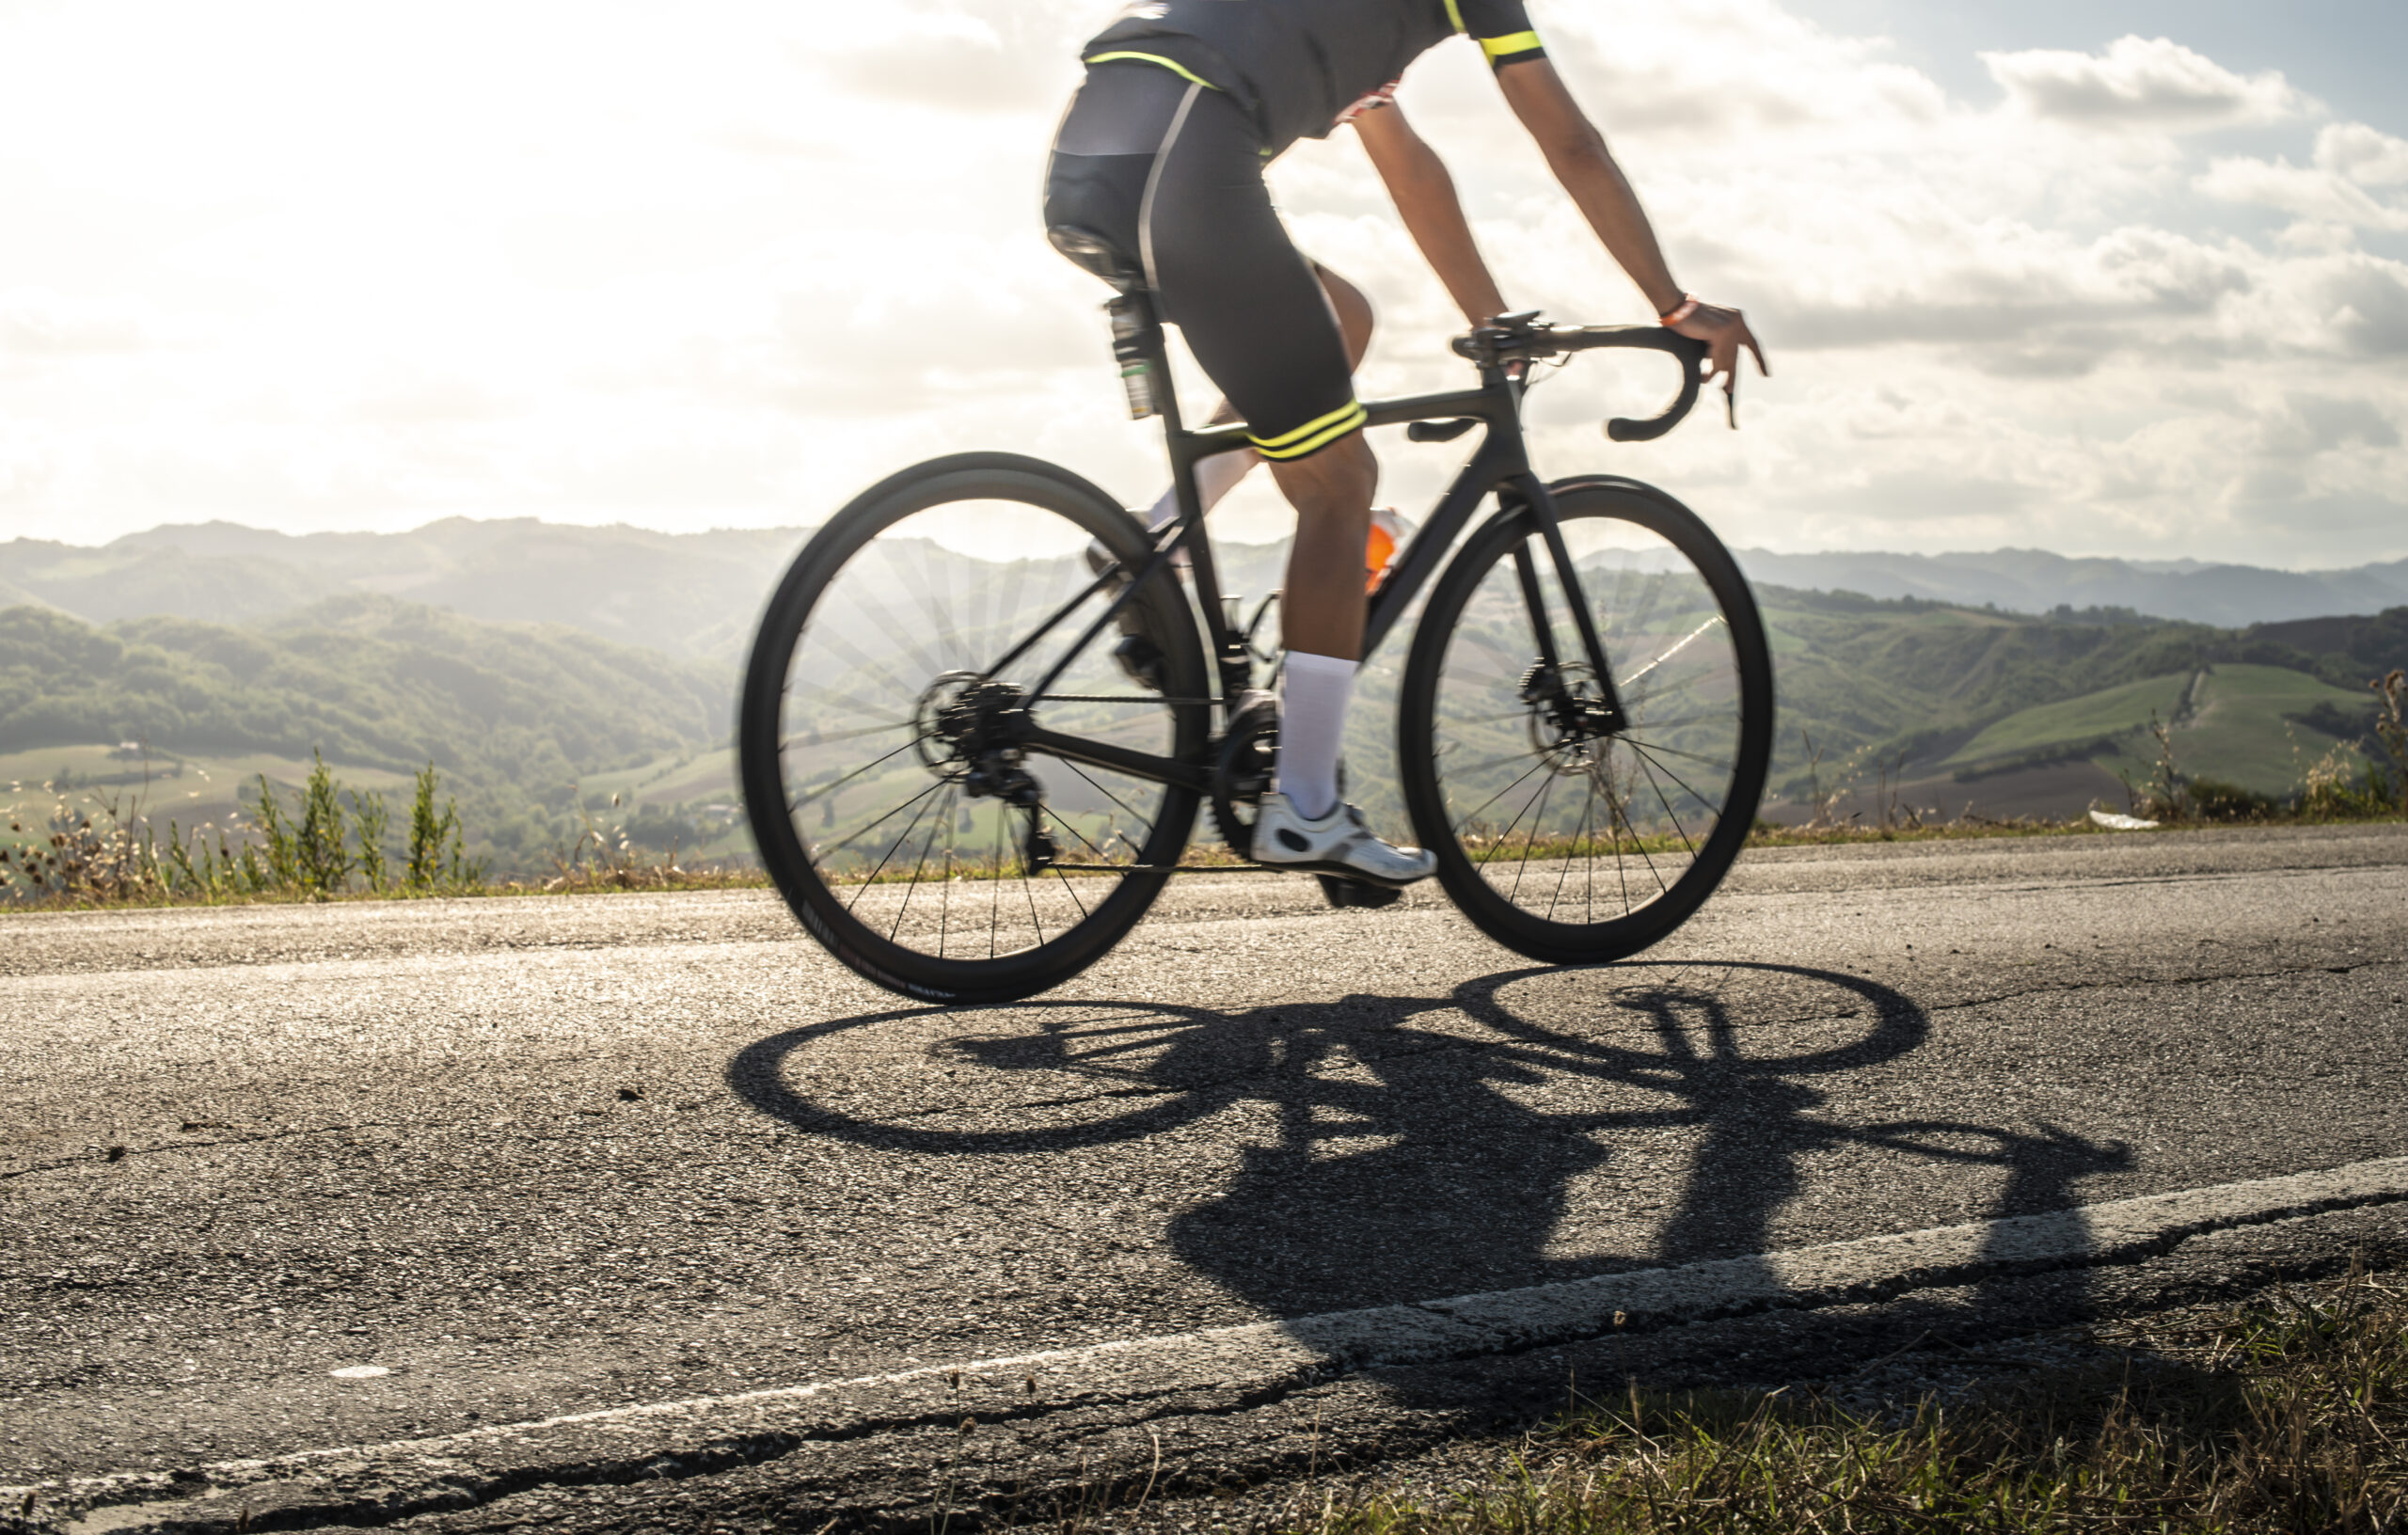 Protegendo sua paixão sobre duas rodas: a importância do seguro de bicicleta